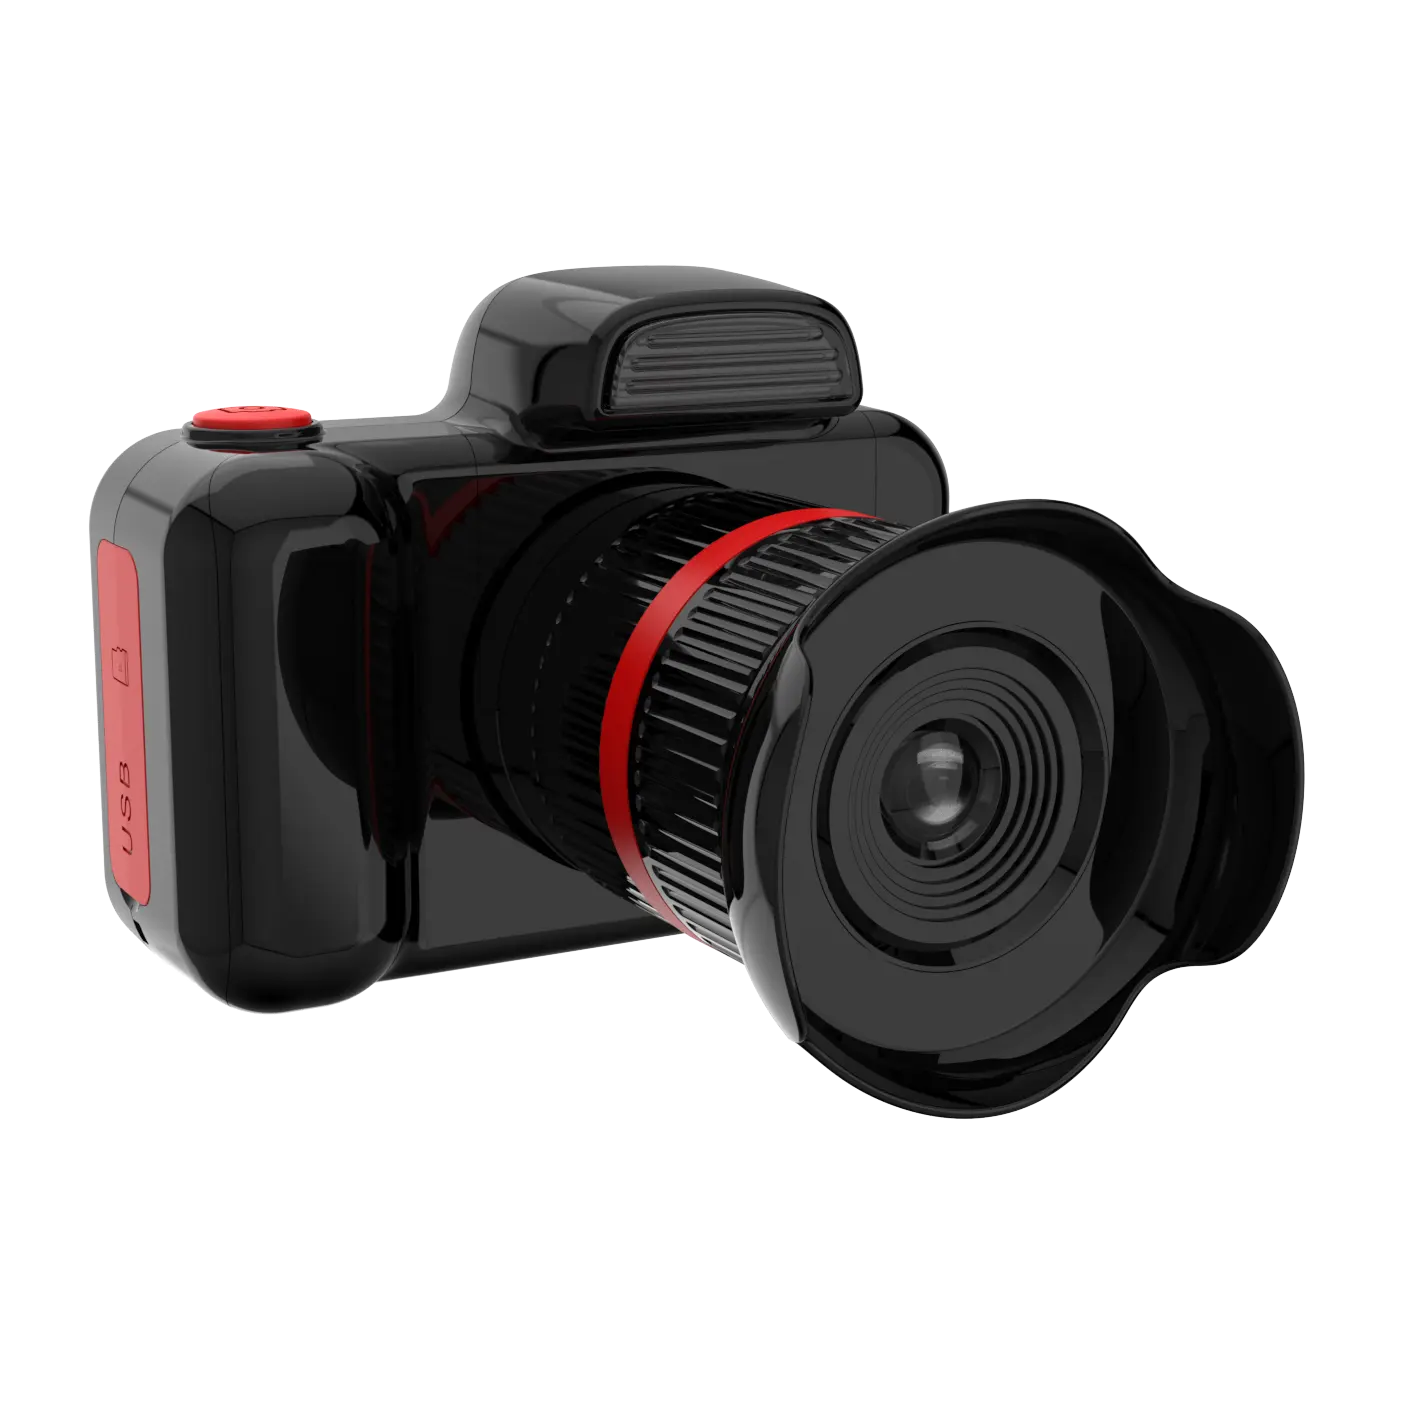 싸구려 좋은 품질의 자동 밝기 장난감 1080p 아이 디지털 카메라 2.0 인치 ips 셀카 비디오 레코더 장난감 어린이를위한 선물